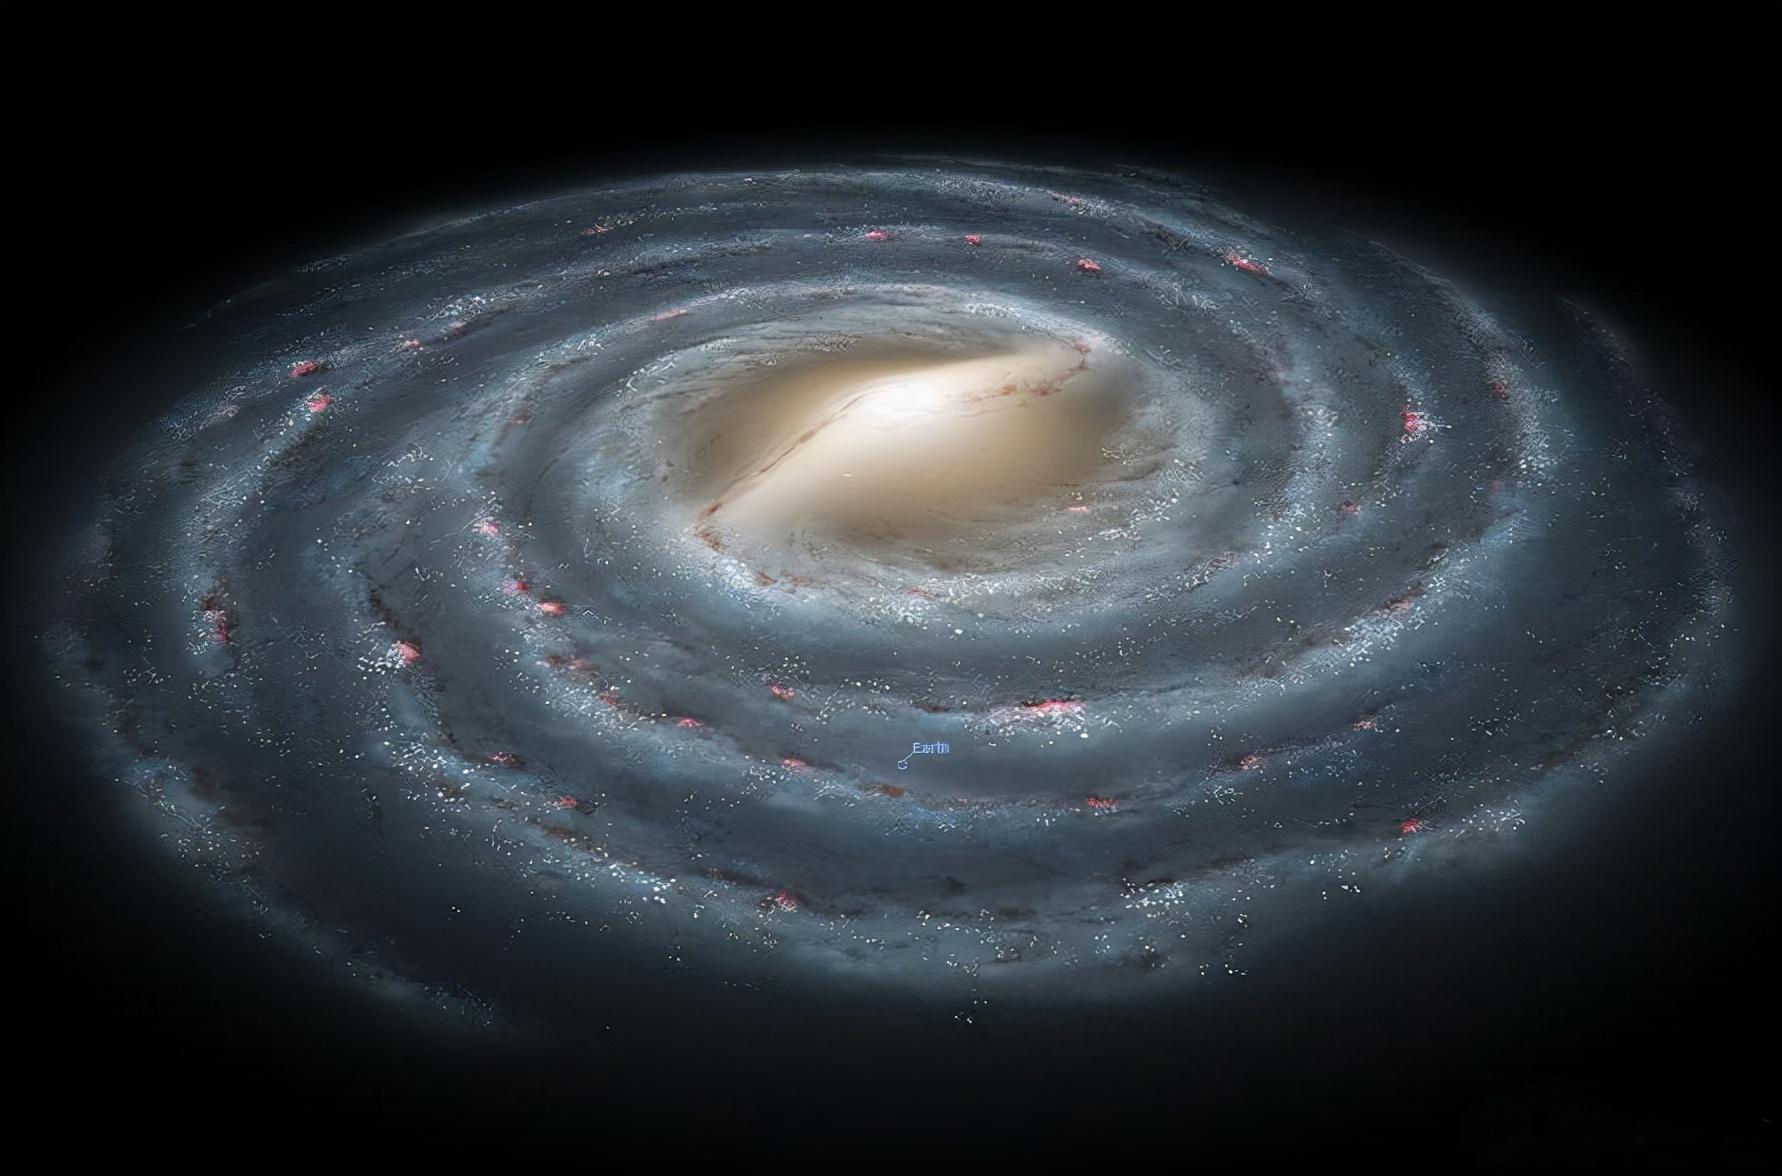 ο μεγαλυτερος γαλαξιας που γνωριζουμε